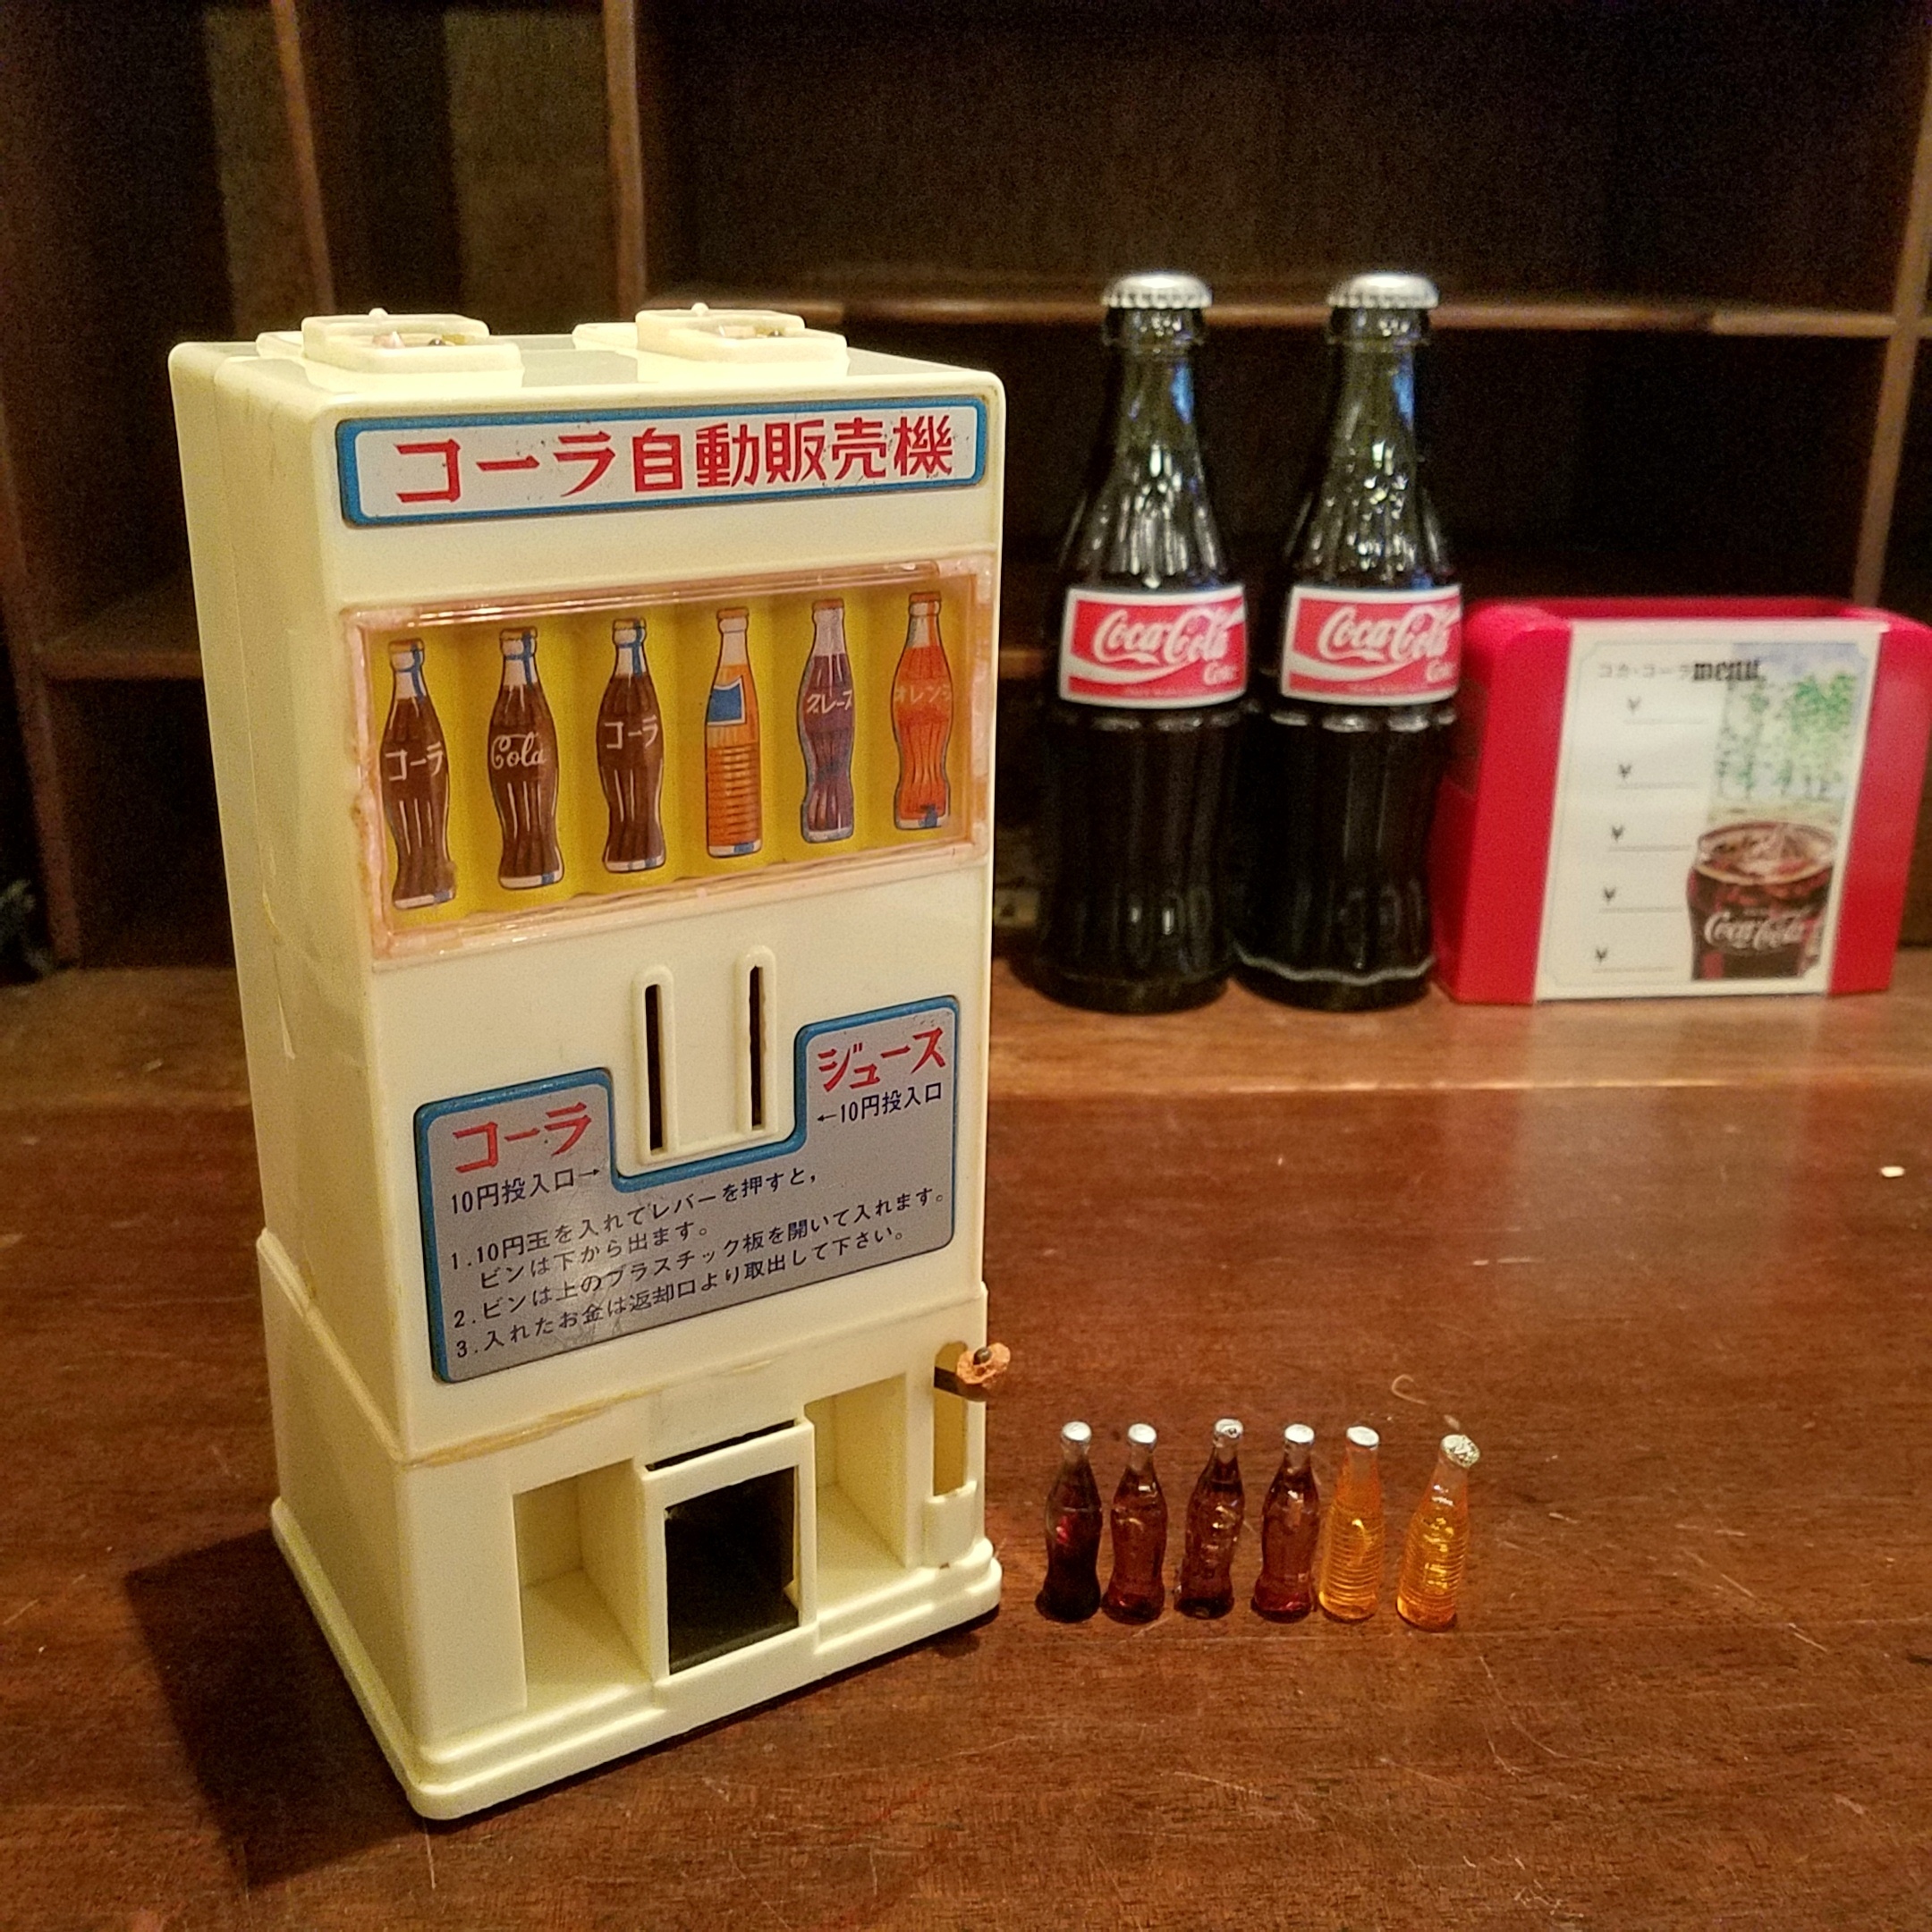 昭和レトロ玩具 ヨネザワ コーラ自動販売機 Sold Out 過去の販売商品